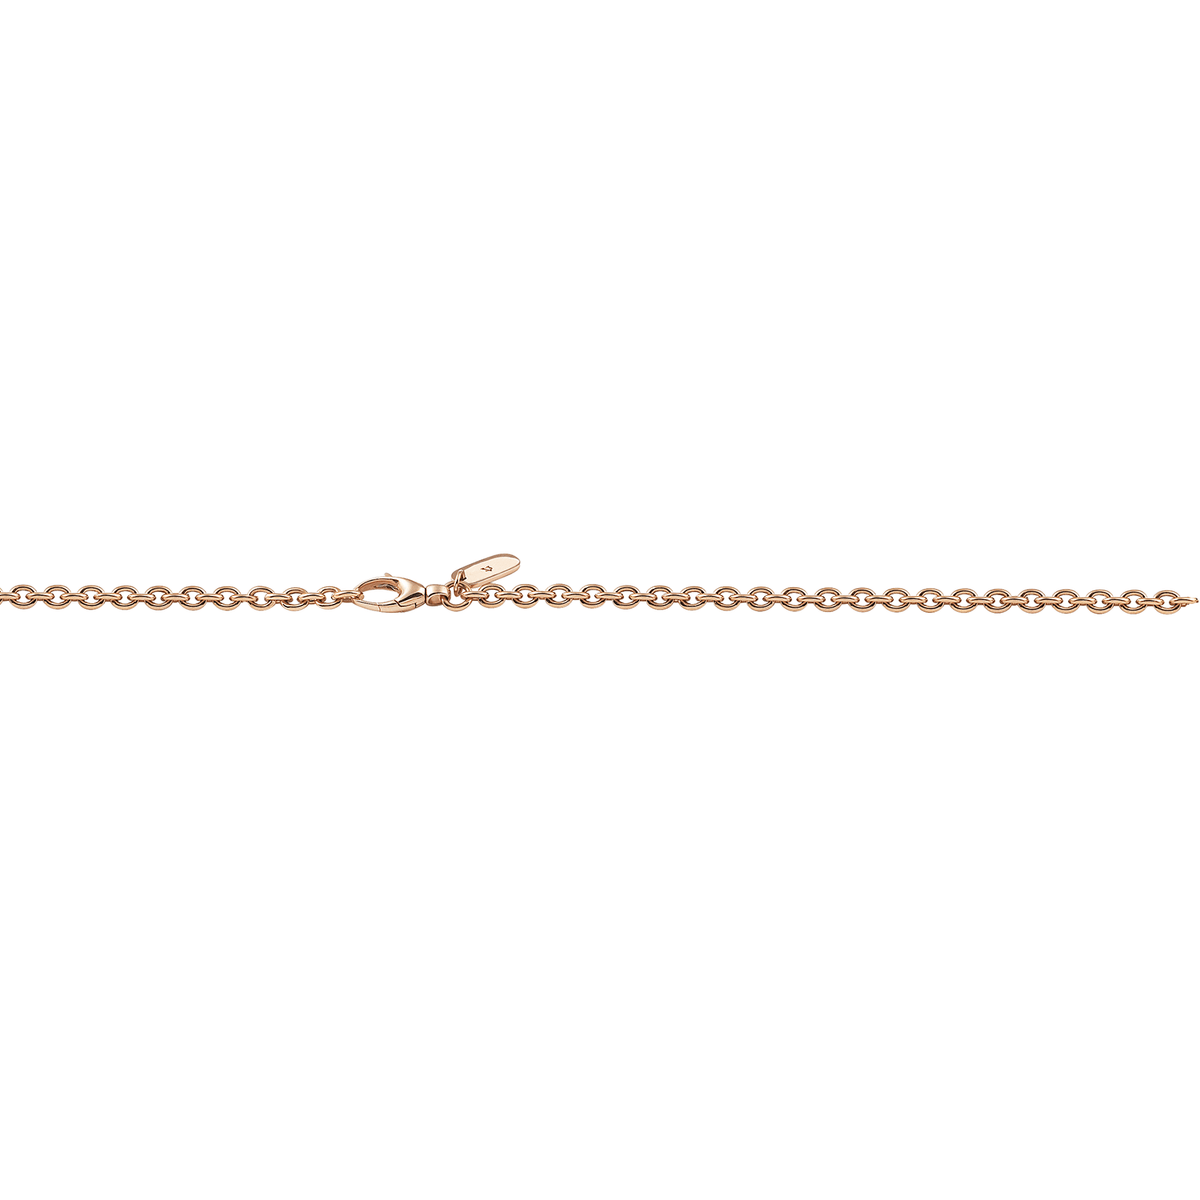 Al Coro Chain in 18k Rose Gold CP31 - Orsini Jewellers NZ